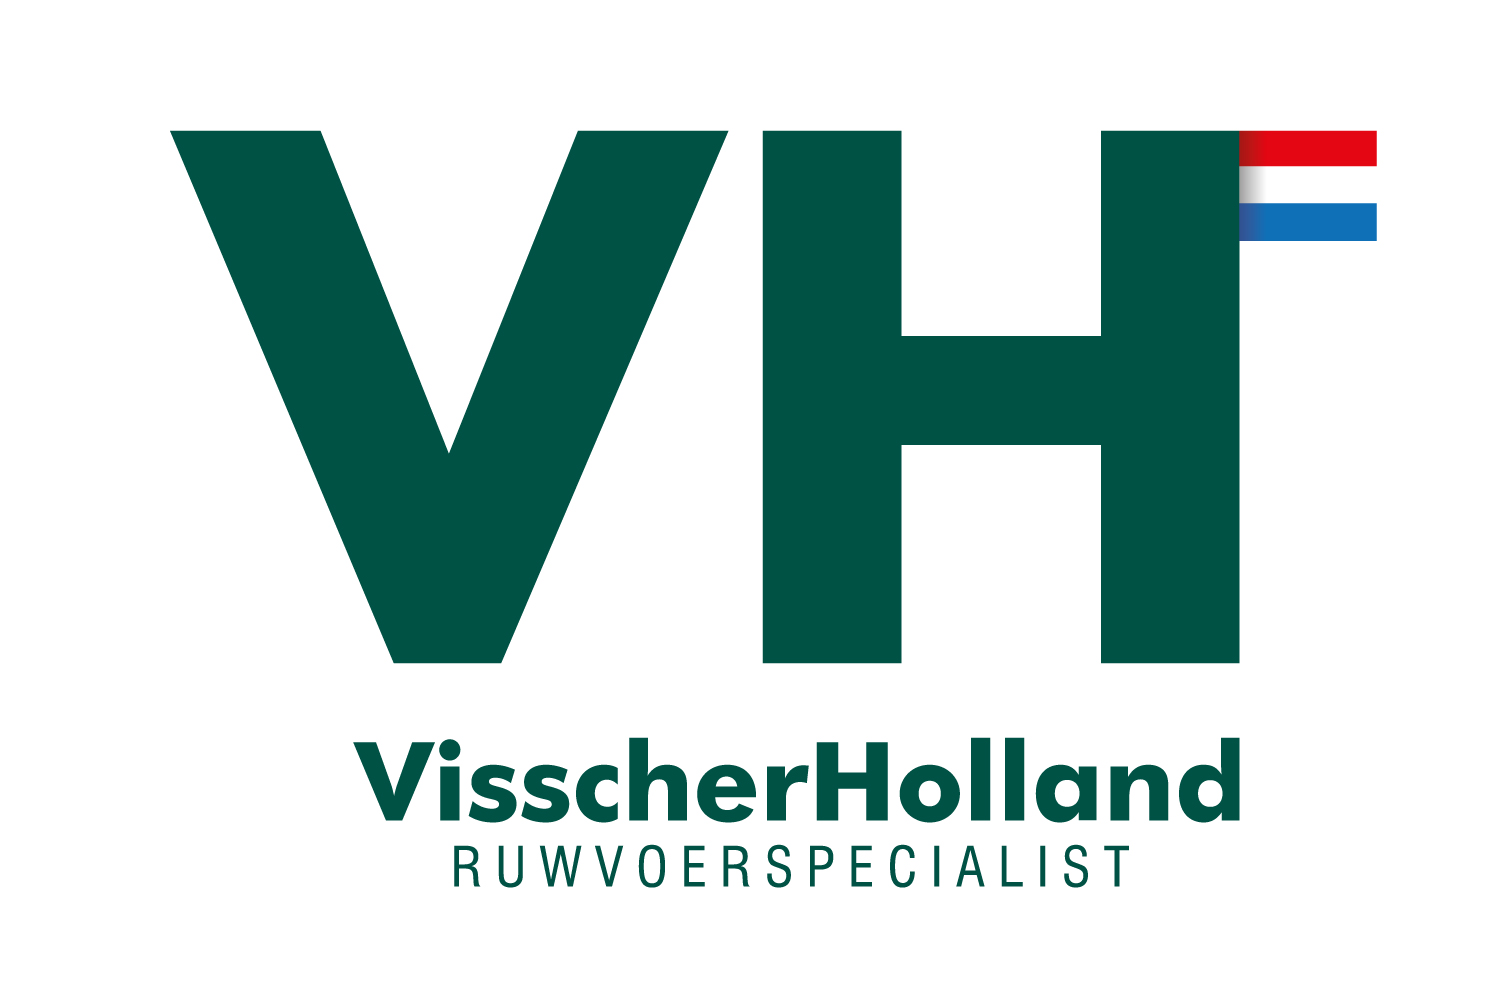 VisscherHolland logo